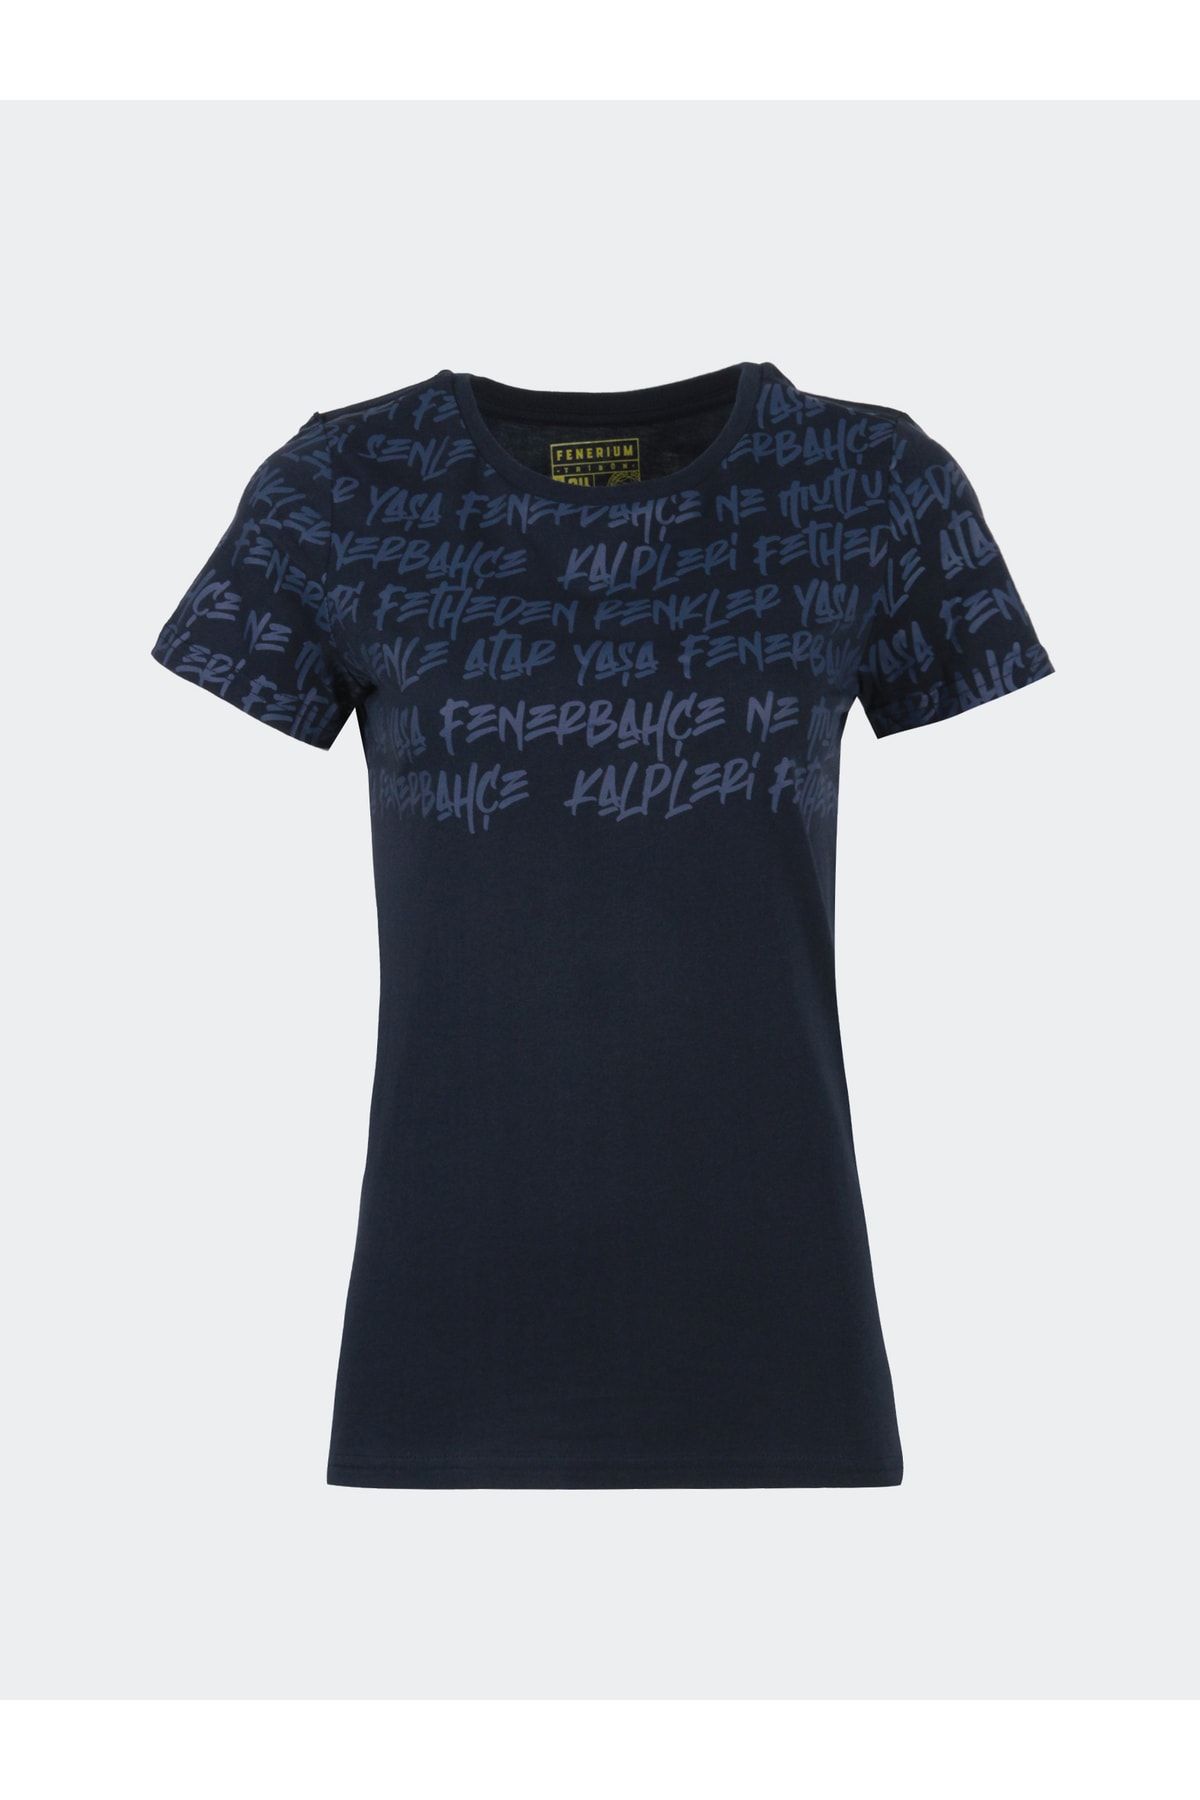 Fenerbahçe Lisanslı Kadın Tribün Pattern T-shirt